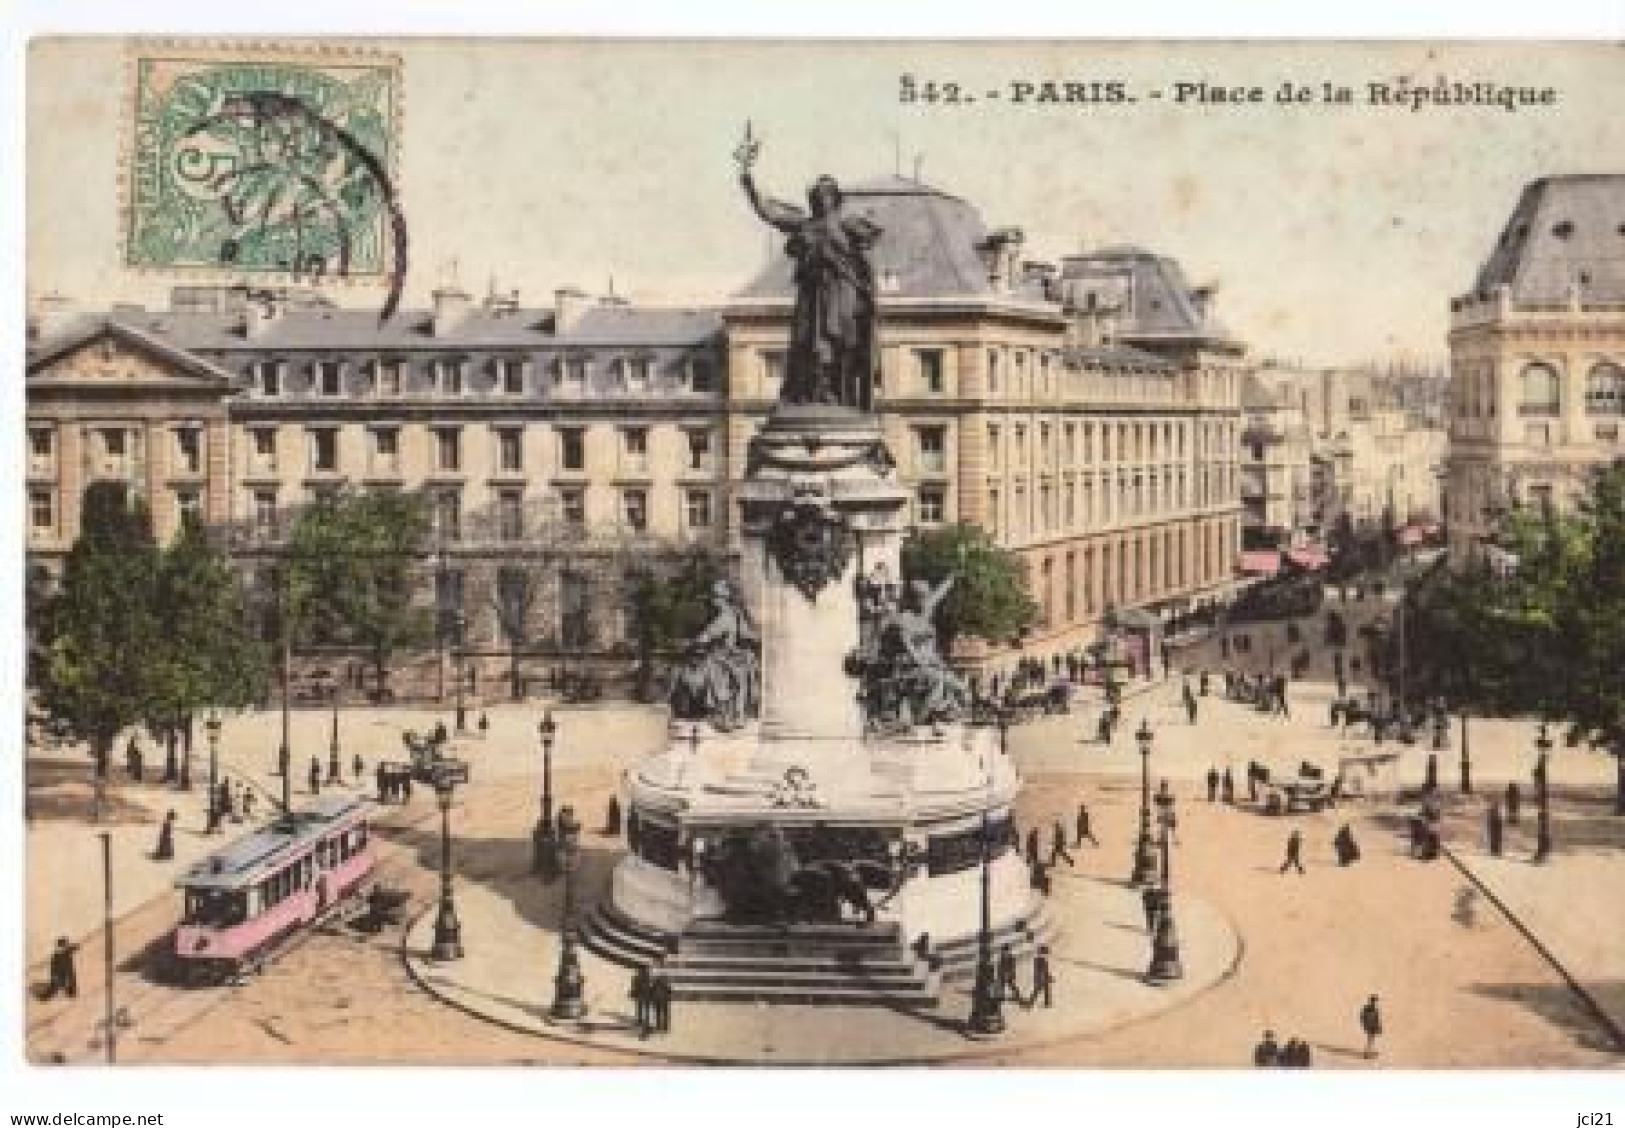 75 PARIS PLACE DE LA RÉPUBLIQUE TRAMWAY (2218)_CP583 - Tranvía